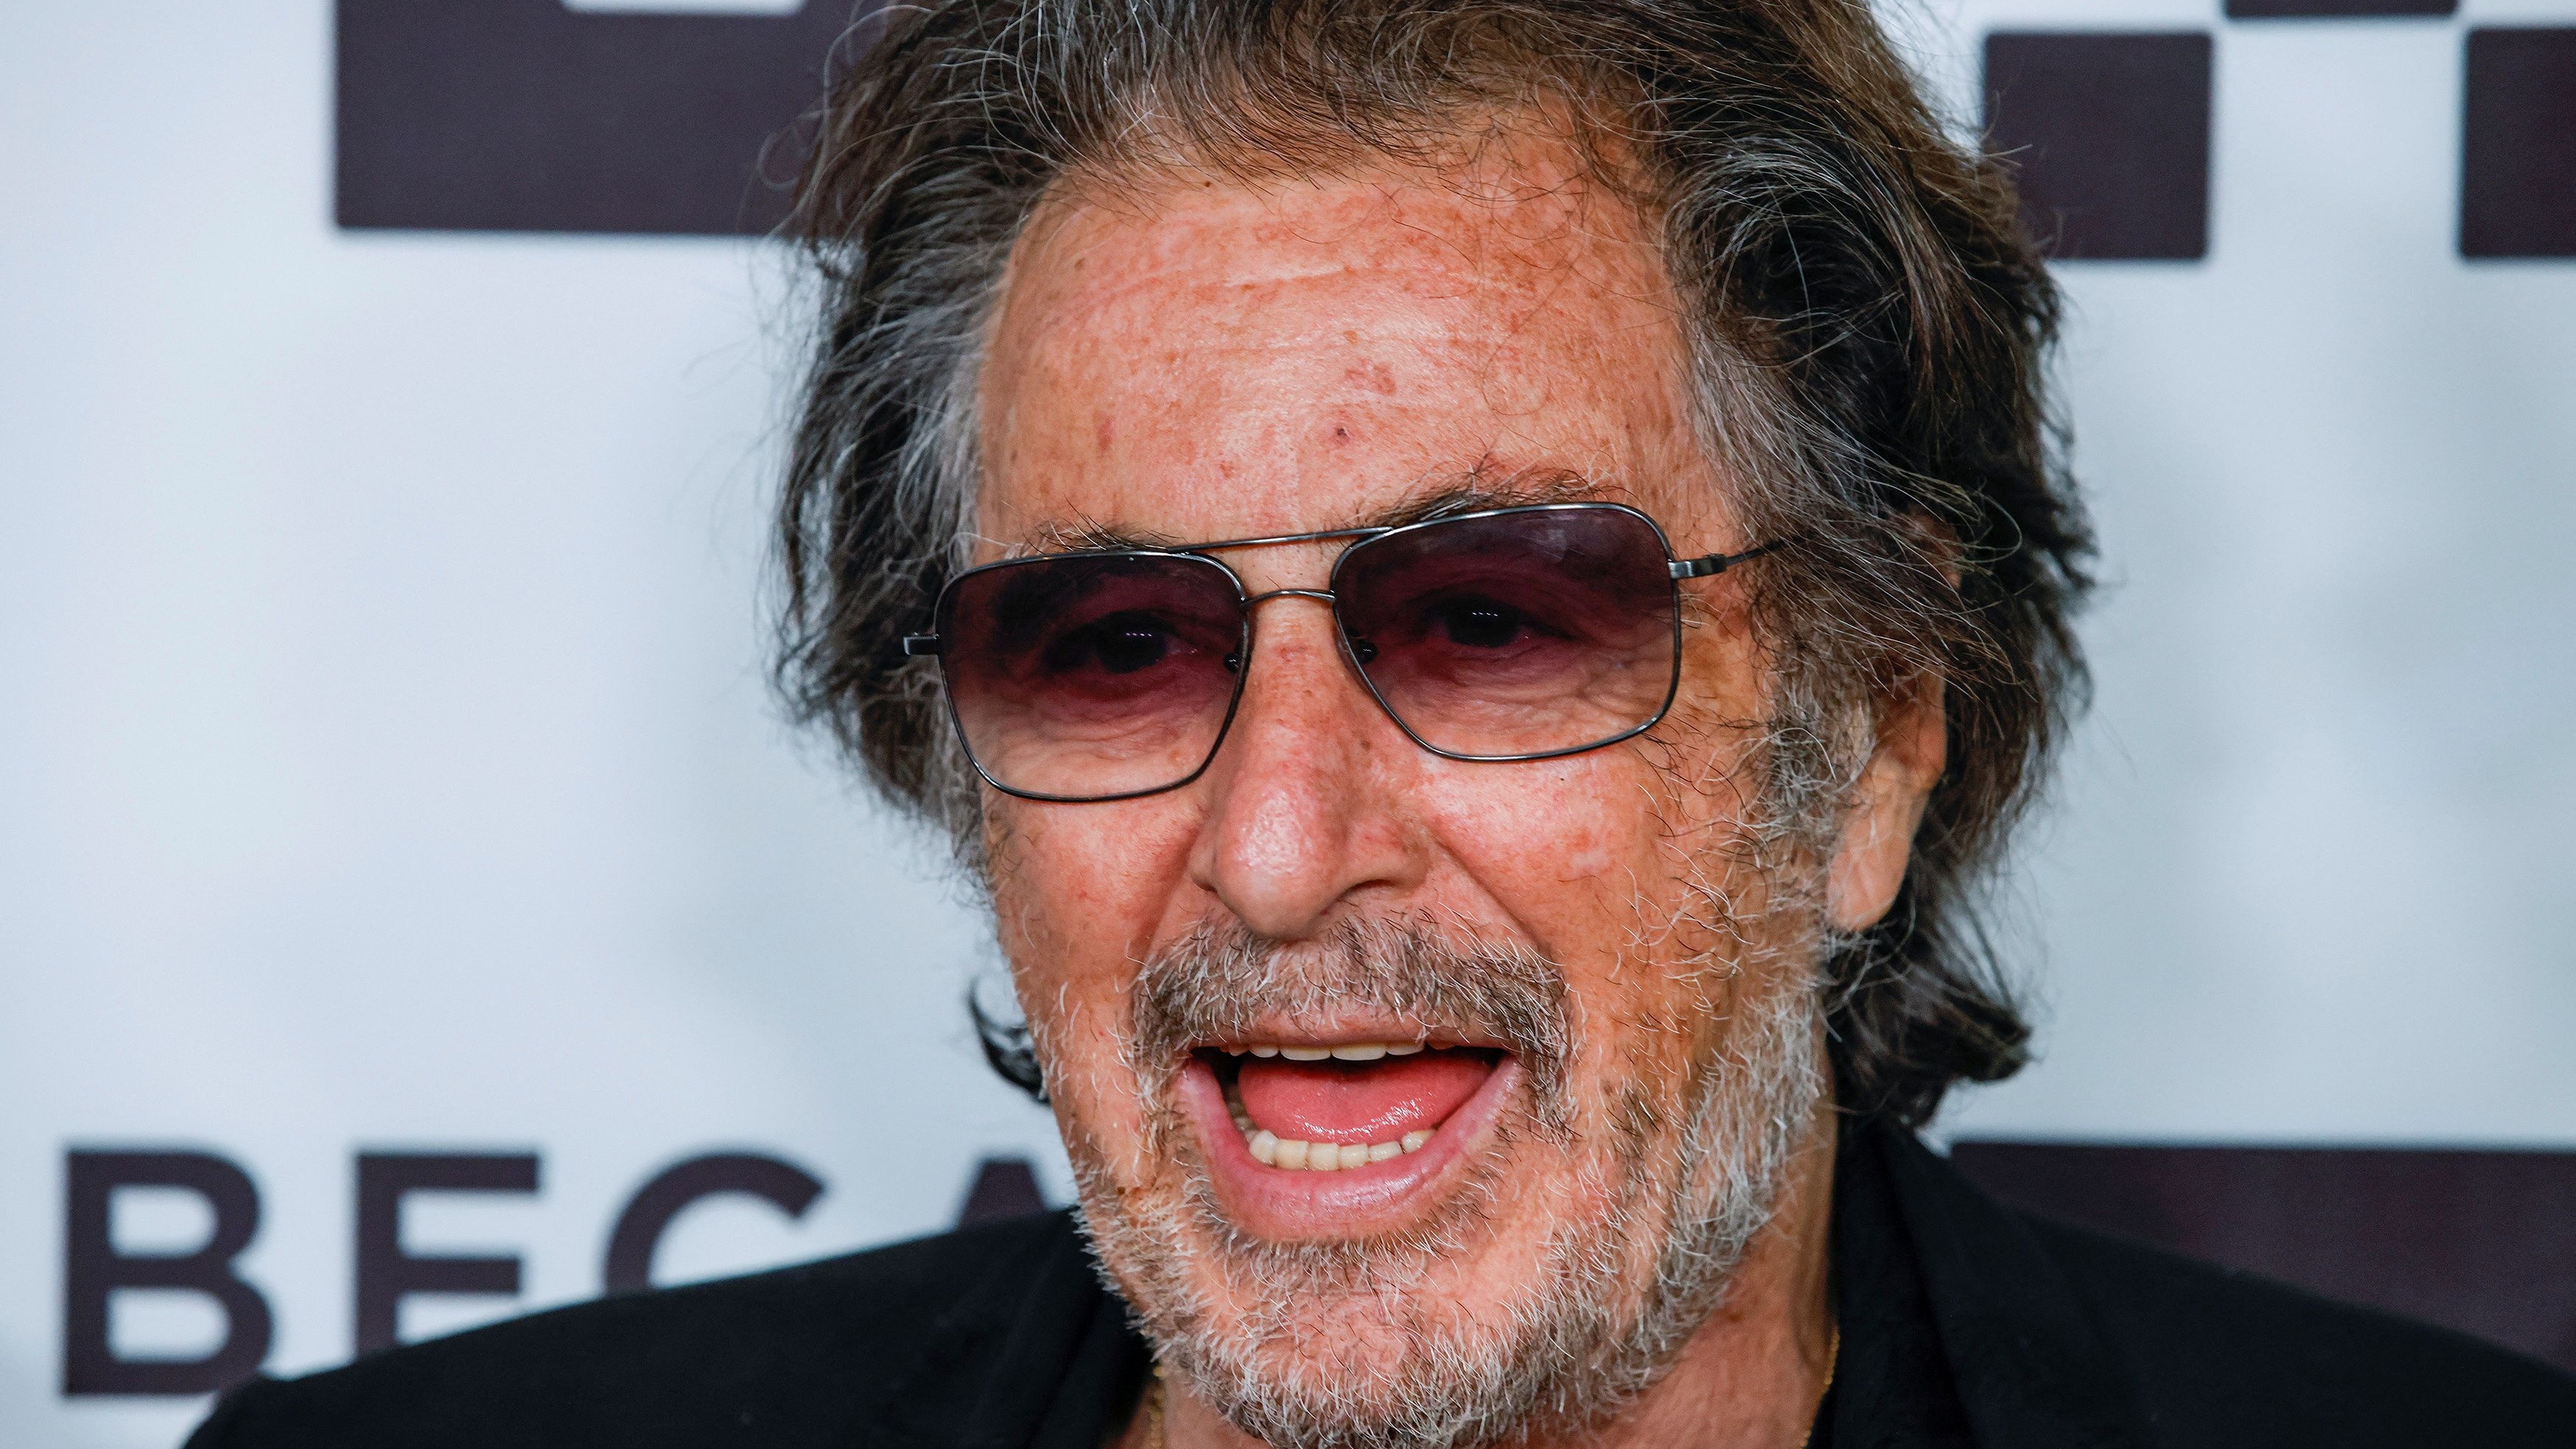 El talentoso actor Al Pacino durante una presentación en el Tribeca Festival en el United Palace Theater en New York, en junio de 2022. Anunció que será padre a los 83 años (Reuters)